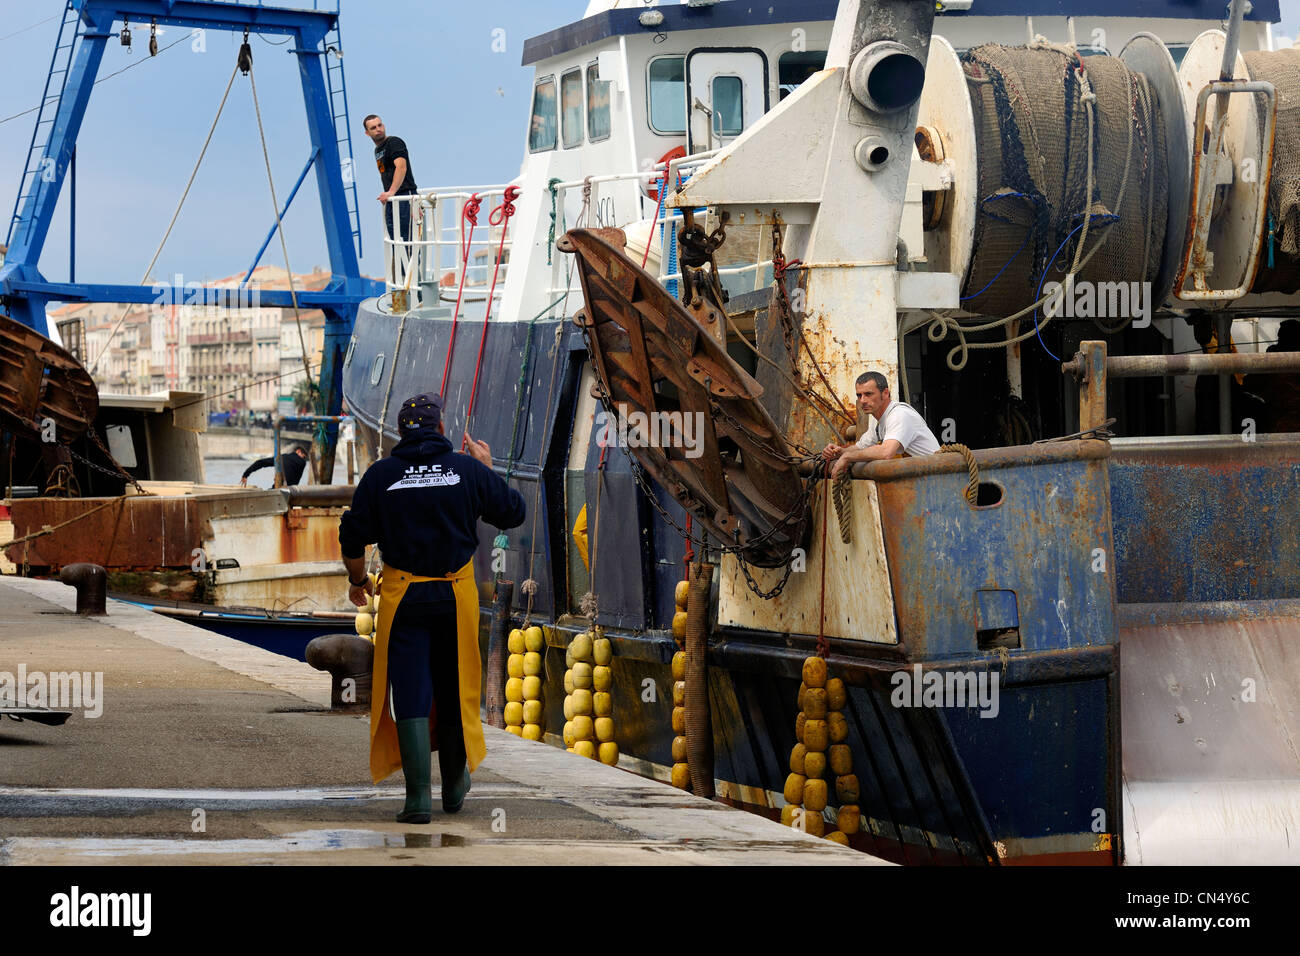 Francia, Herault, Sete, actividad en el puerto de acoplamiento del mercado de subastas de pescado Foto de stock